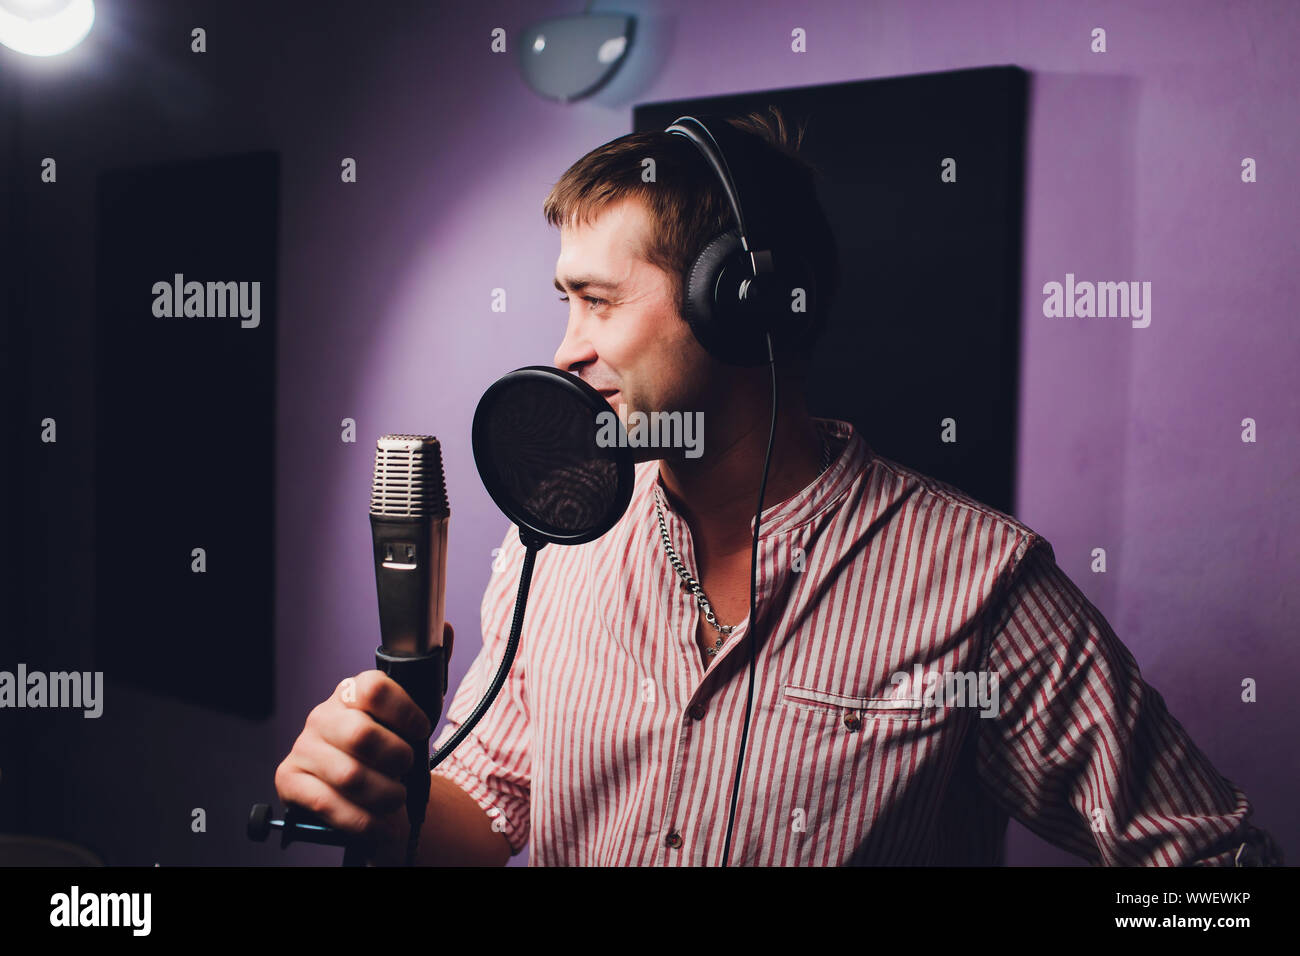 Musik, Show business, Menschen und Voice-Konzept - männliche Sänger mit  Kopfhörer und Mikrofon singen Song bei Sound Recording Studio  Stockfotografie - Alamy